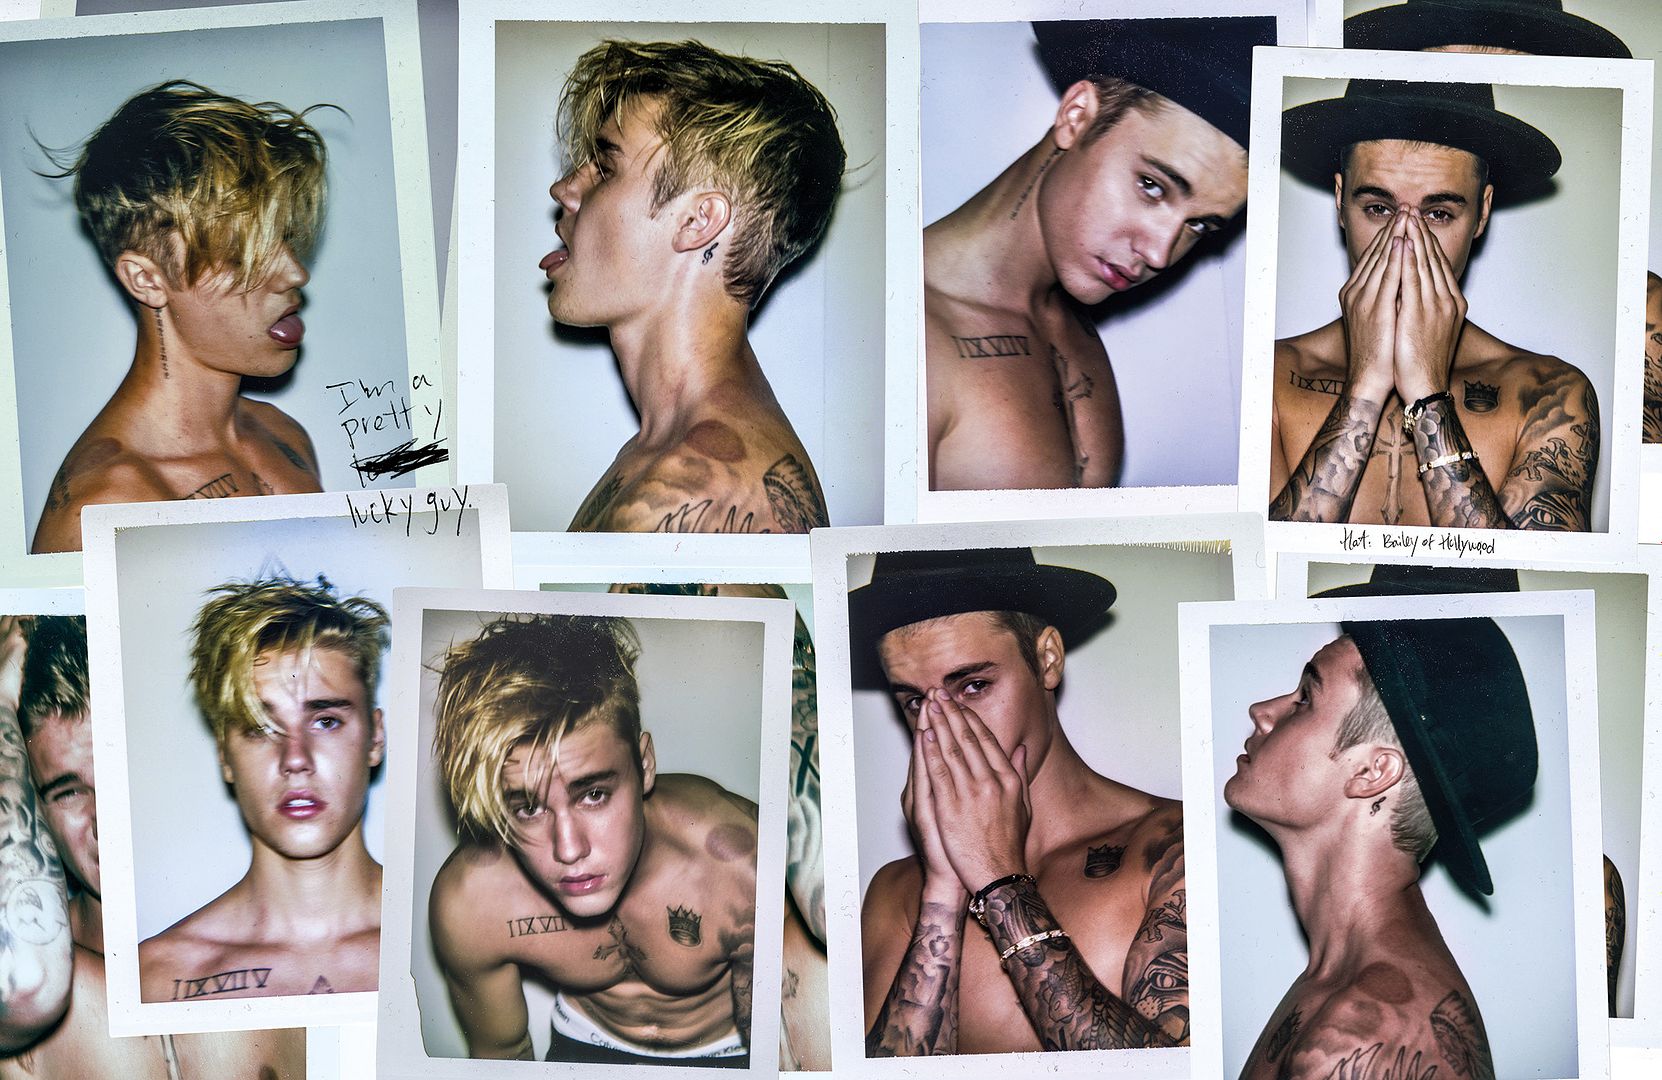 Justin Bieber : Interview (August 2015) photo 1436962535_justin-bieber-zoom.jpg